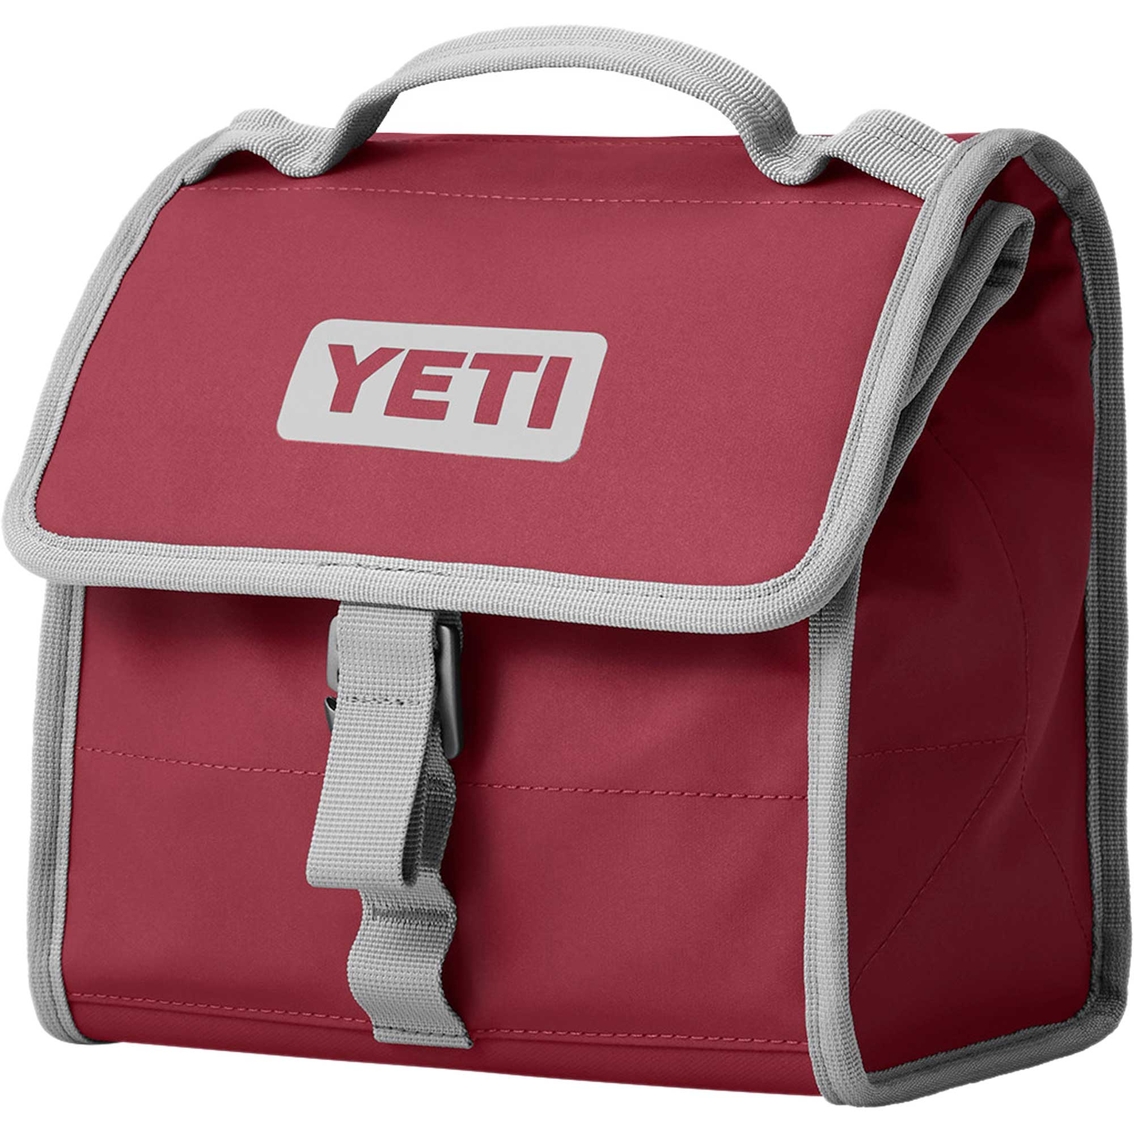 Yeti Daytrip Bag - Image 4 of 5